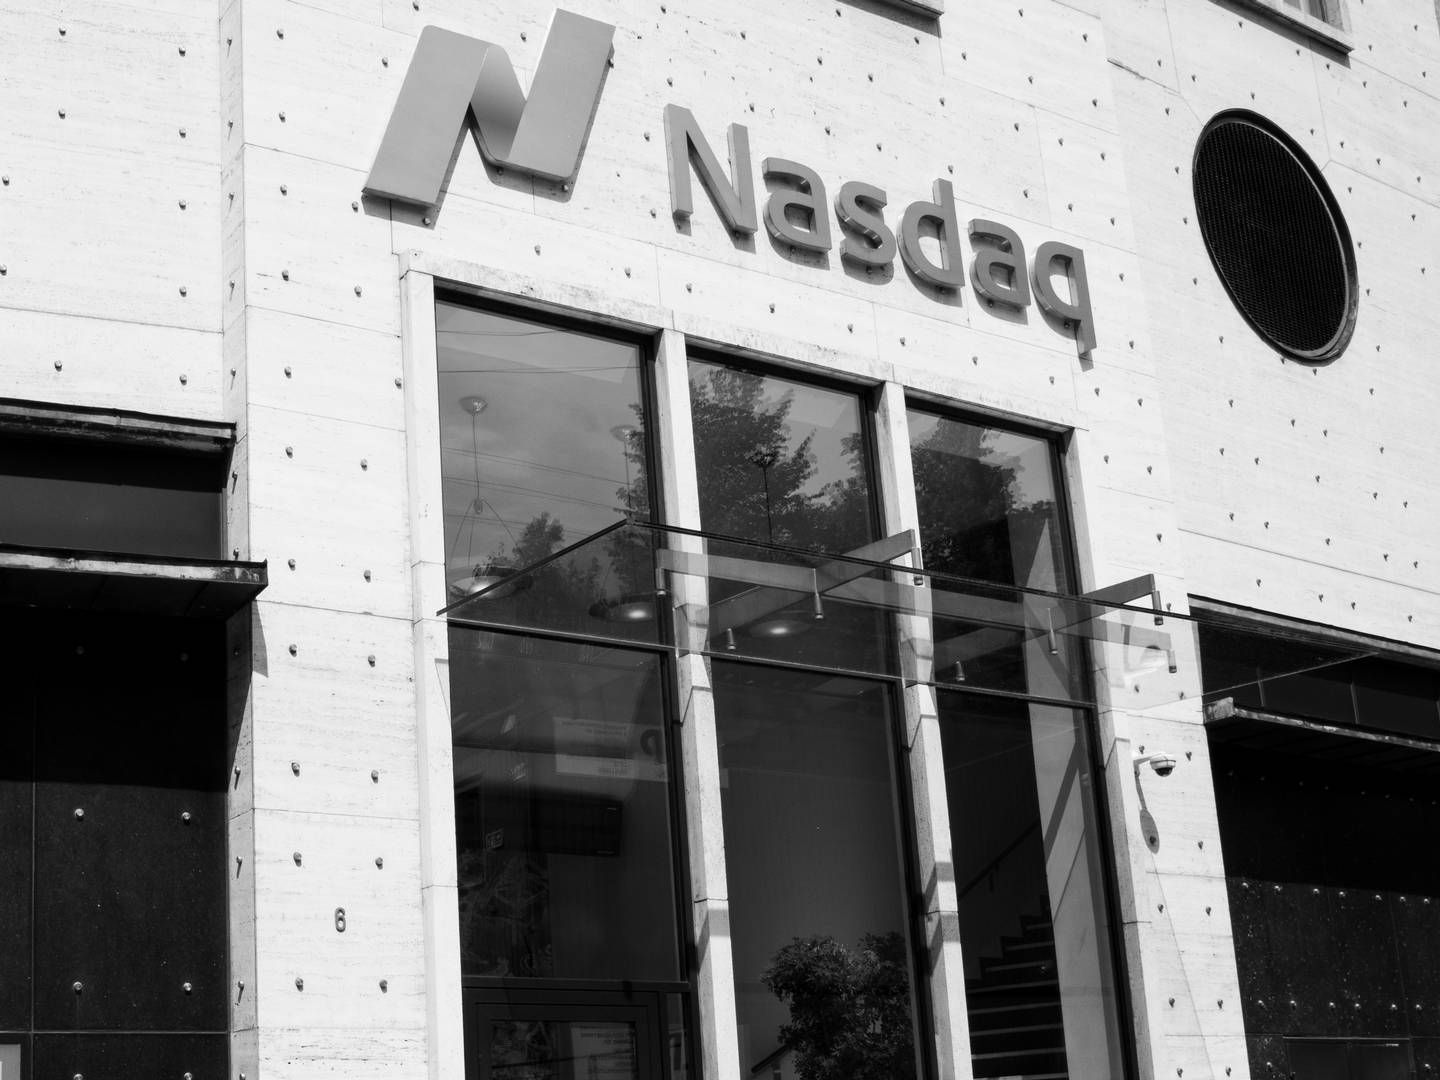 First North er en vækstbørs under Nasdaq, som også står bag fondsbørsen i København. I løbet af de sidste to år har en række danske selskaber forladt vækstbørsen | Photo: Christian Lykking